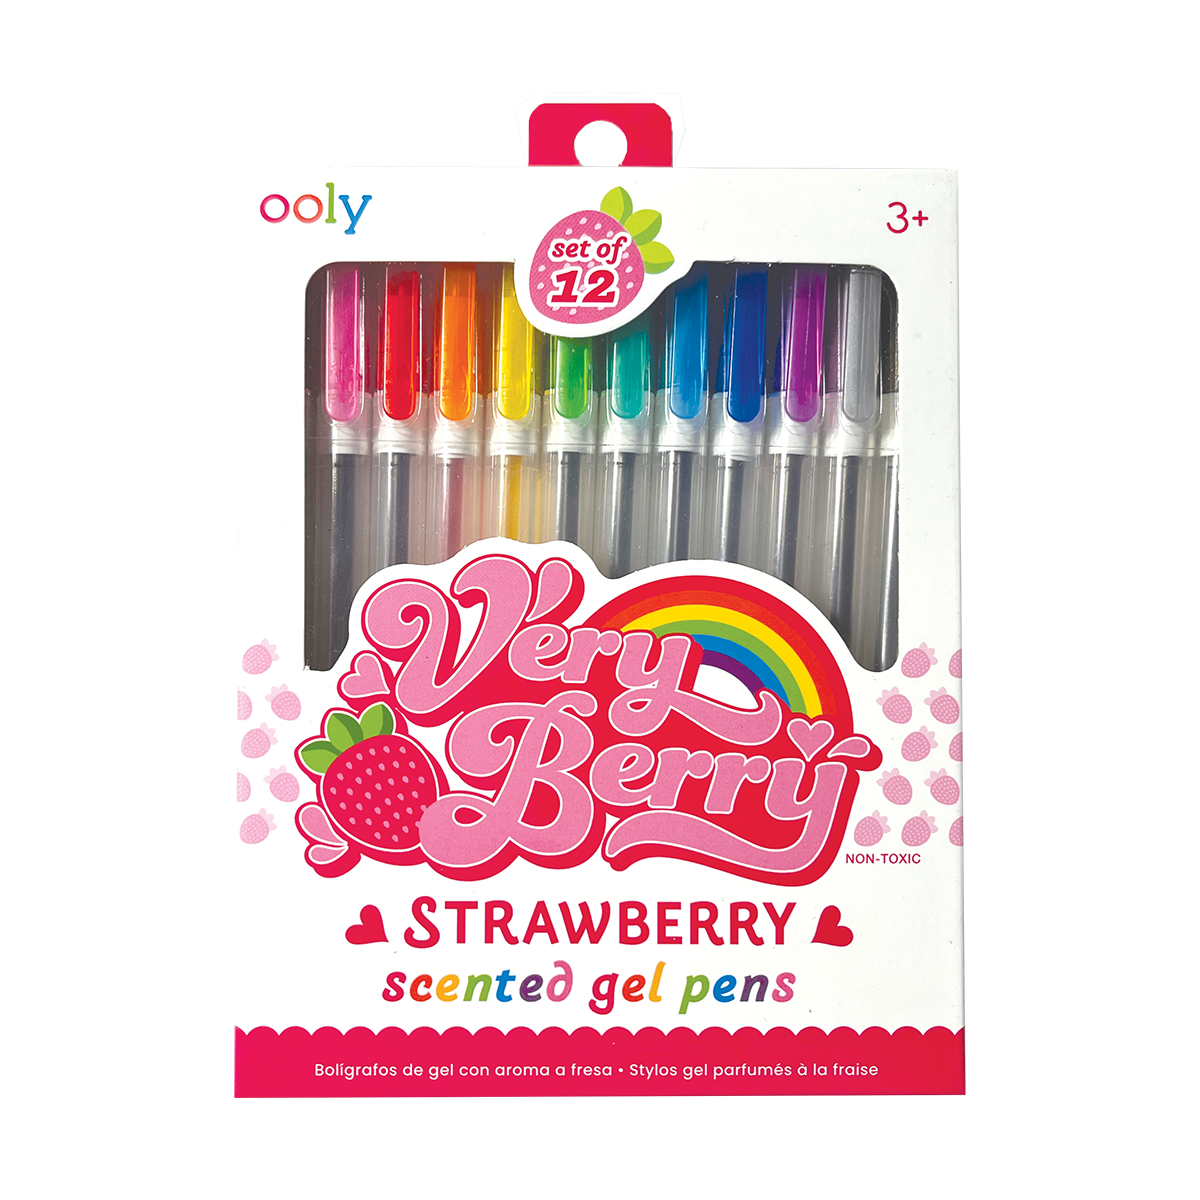 ooly ooly fine line gel pens, set of 6